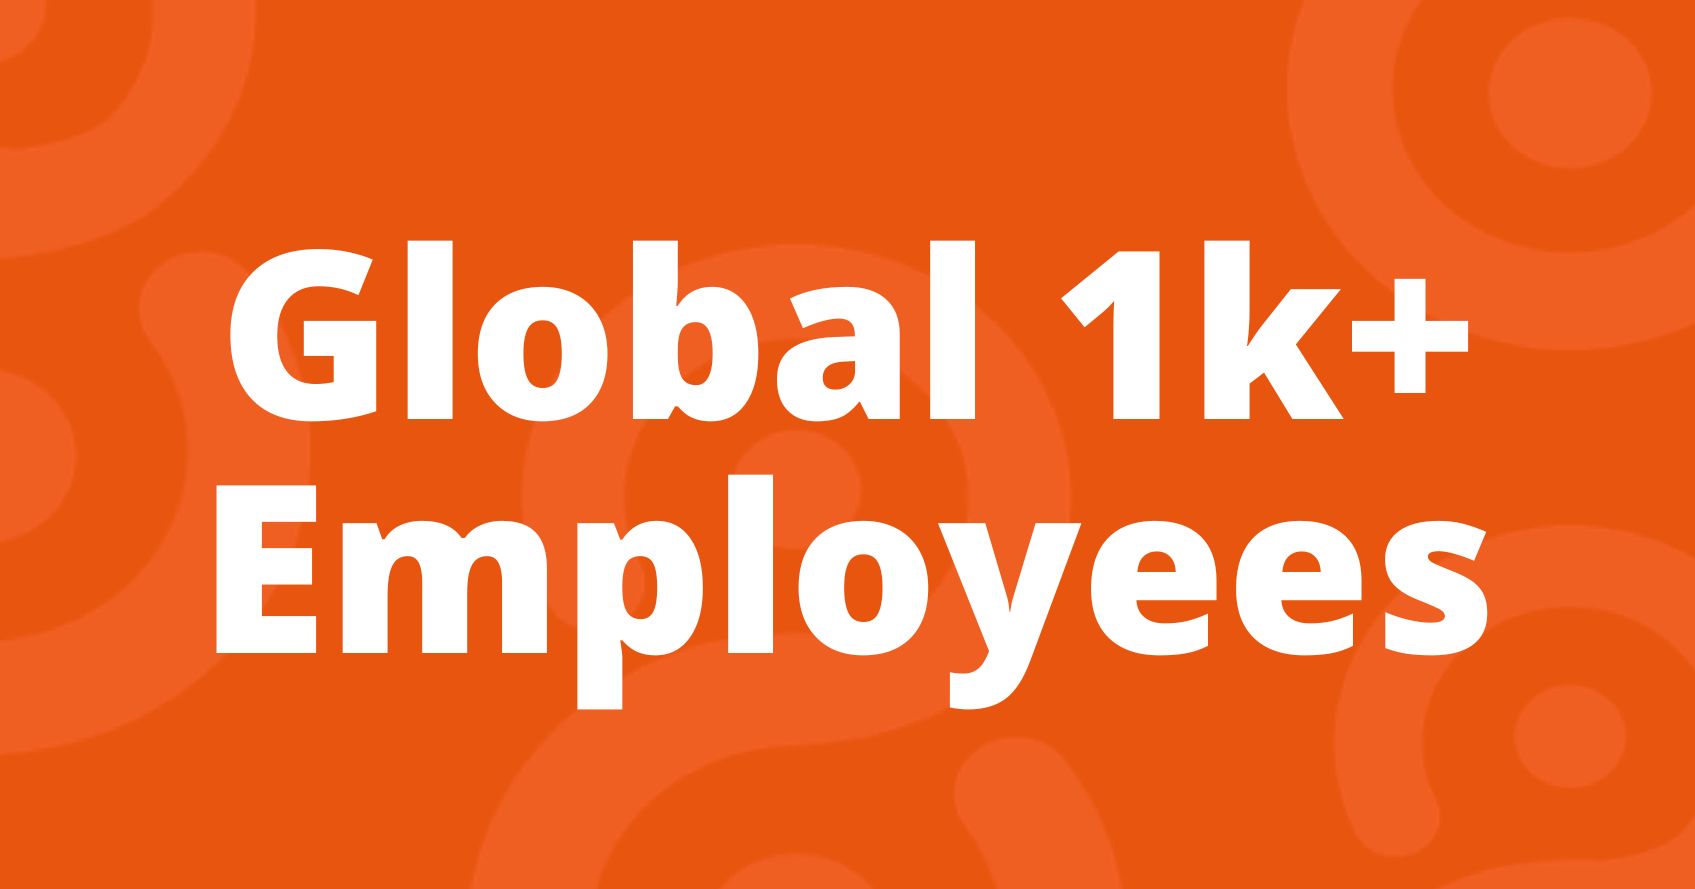 Global 1,000+ Employees